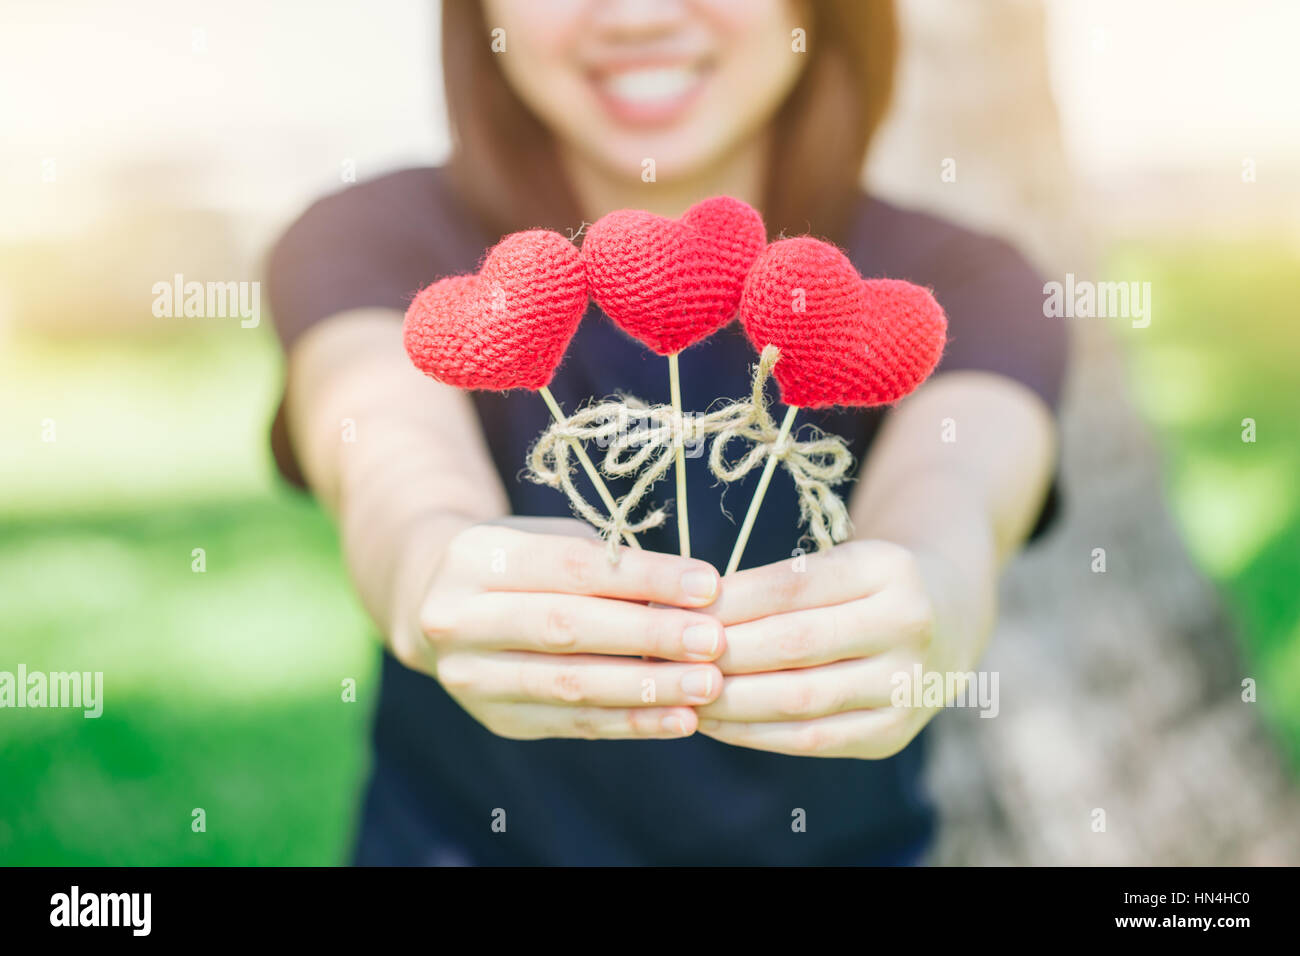 neuen Freund Liebe treffen und Datum süßes Lächeln asiatischen Thai Teen Hand halten rote Herz süße liebevolle Symbol kümmern oder Nächstenliebe helfen Ihnen. Stockfoto